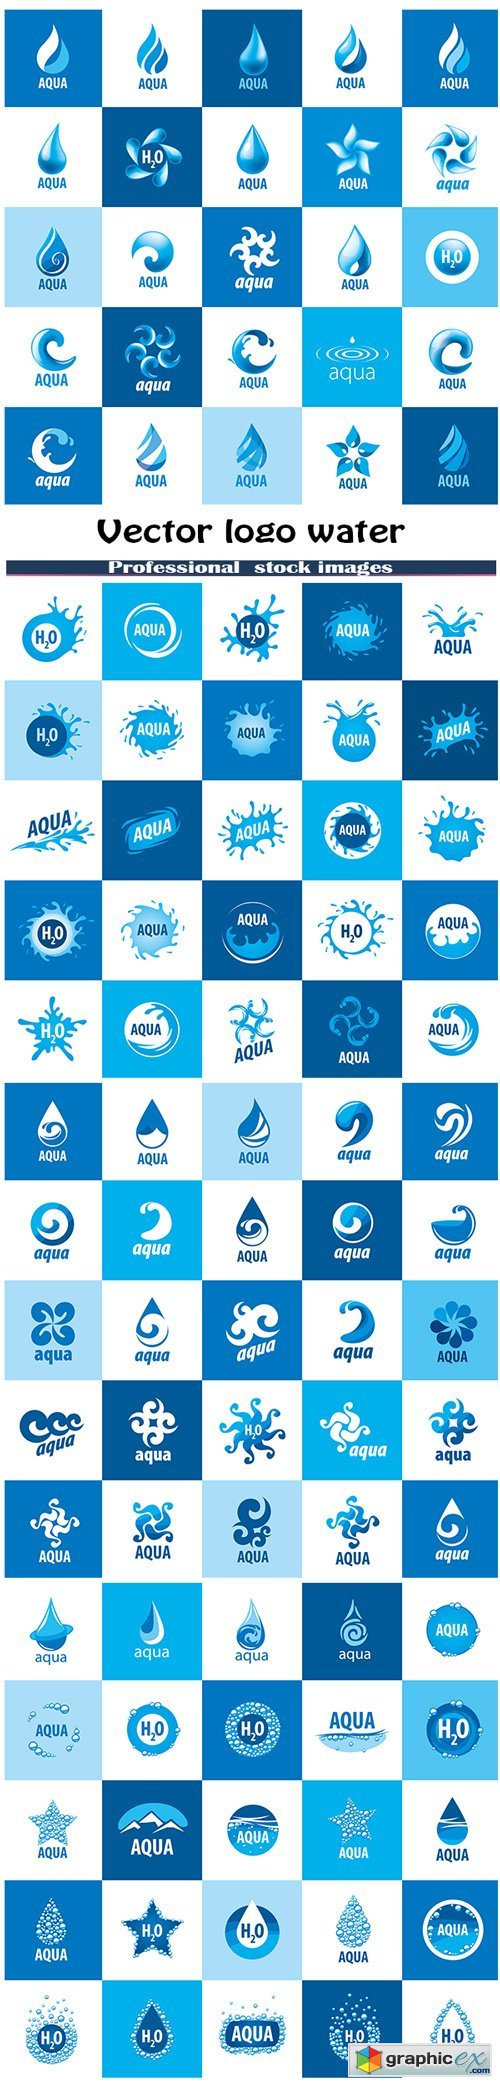 Logo water